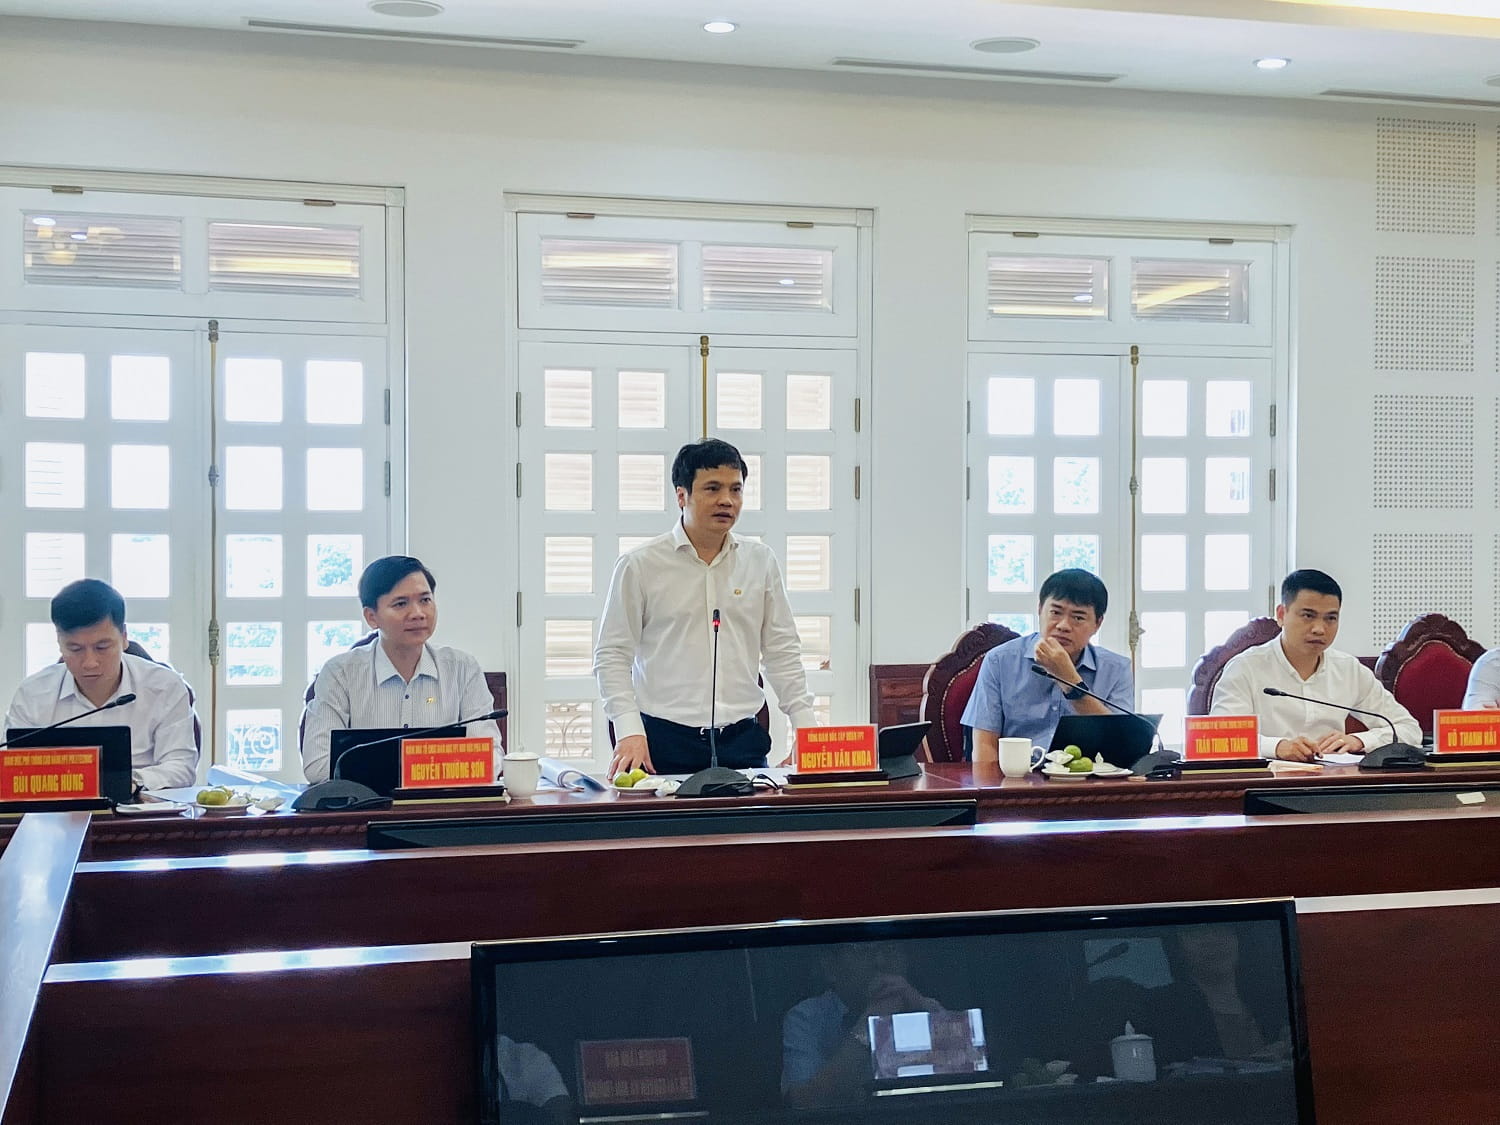 Tổng giám đốc FPT Nguyễn Văn Khoa chia sẻ về mong muốn giúp Gia Lai phát triển theo hai hướng Giáo dục và Chuyển đổi số để Gia Lai phát triển đột phá